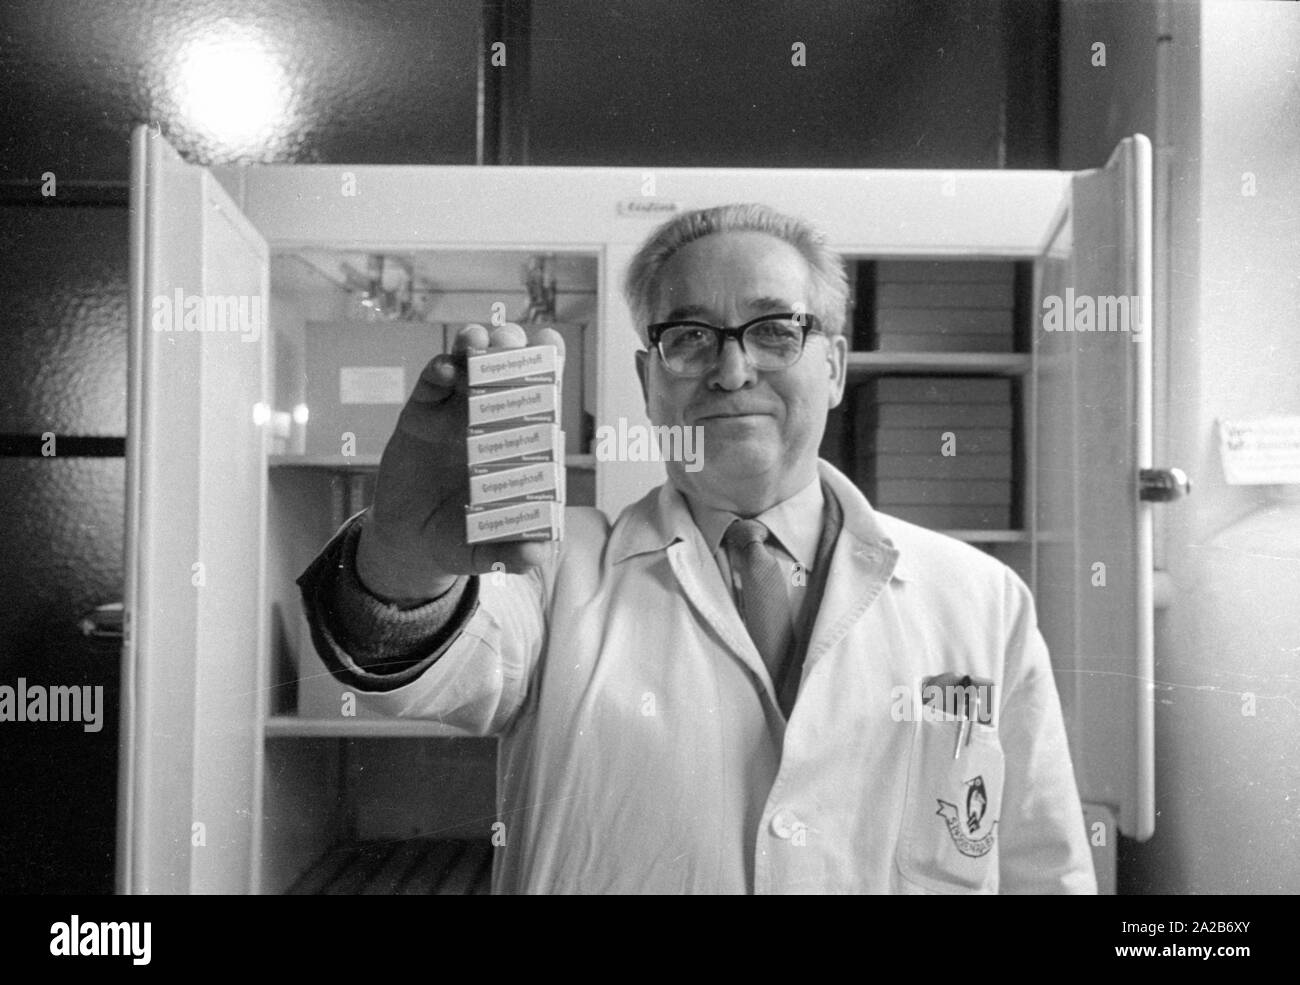 Immunisierung Aktion in Konstanz mit einem neu entwickelten Grippeimpfstoff der Ravensberg Chemische Fabrik, ein Angestellter mit den neuen Impfstoff. Um 1960 Ausschüsse empfohlen, die Impfung gegen Influenza Viren zum ersten Mal in der Bundesrepublik Deutschland. Stockfoto